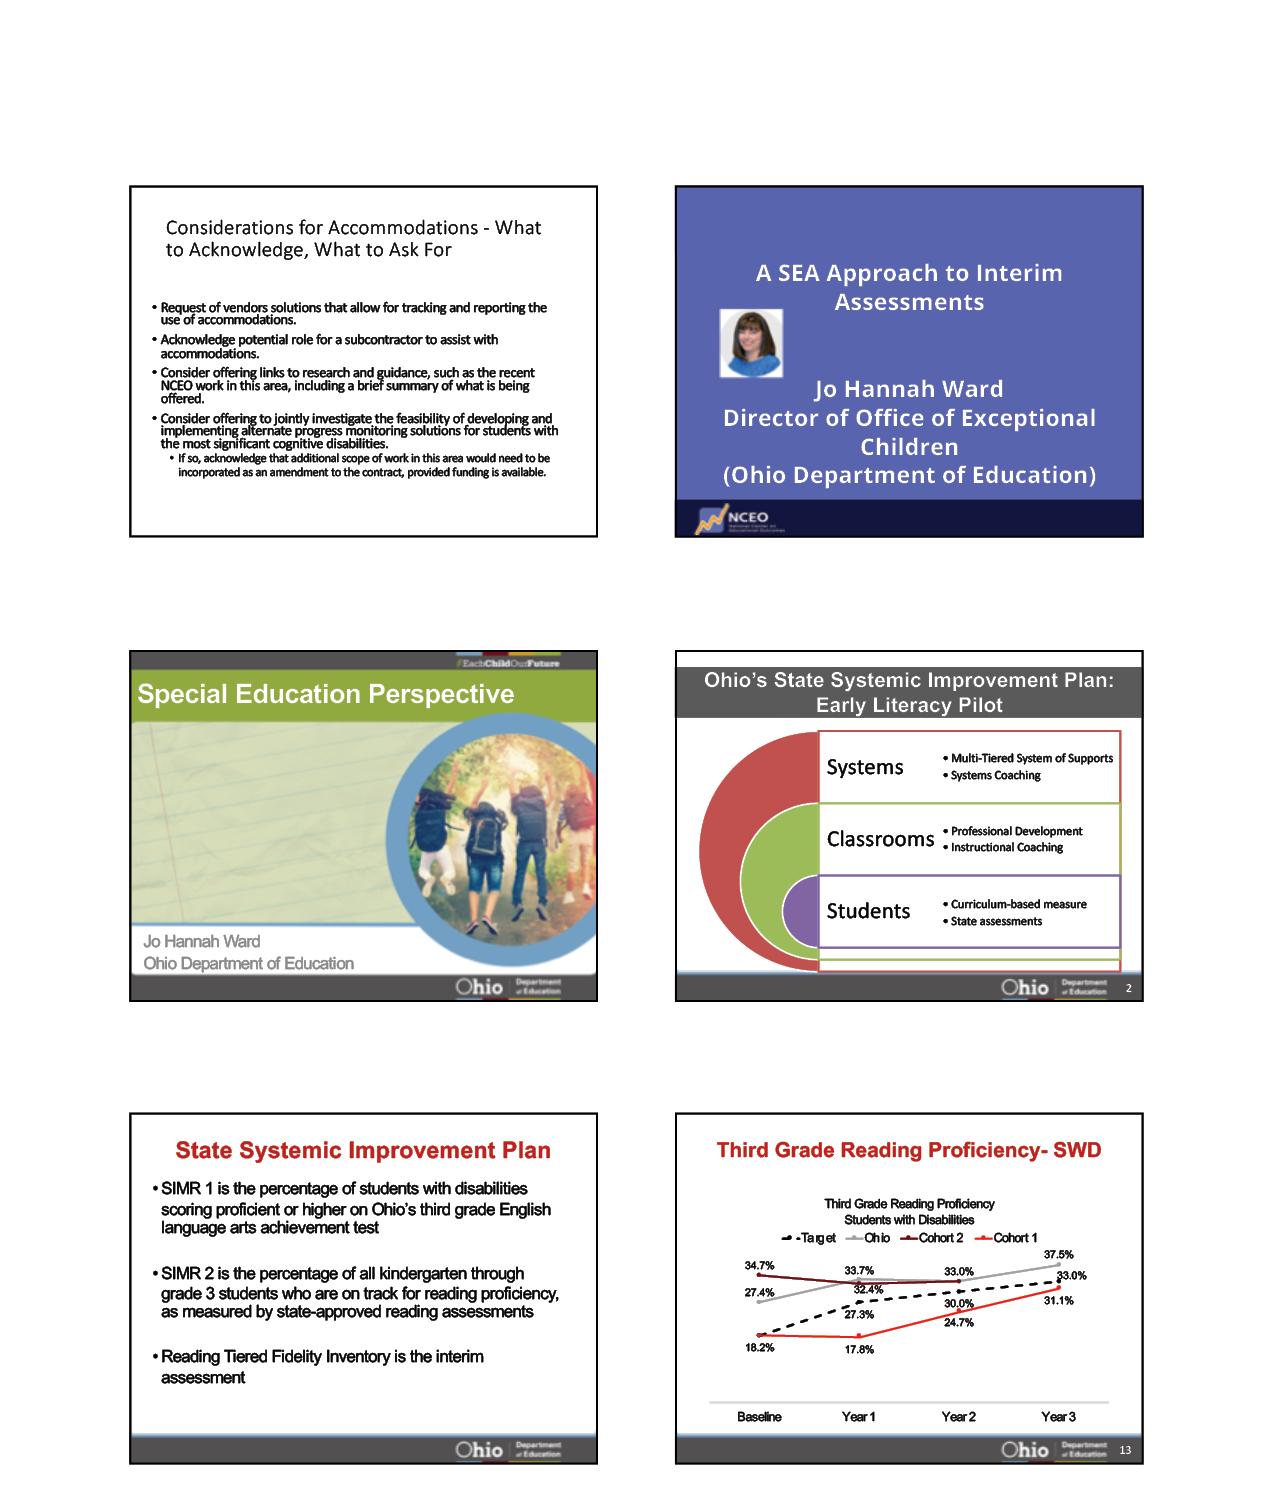 PowerPoint Slides 61-66